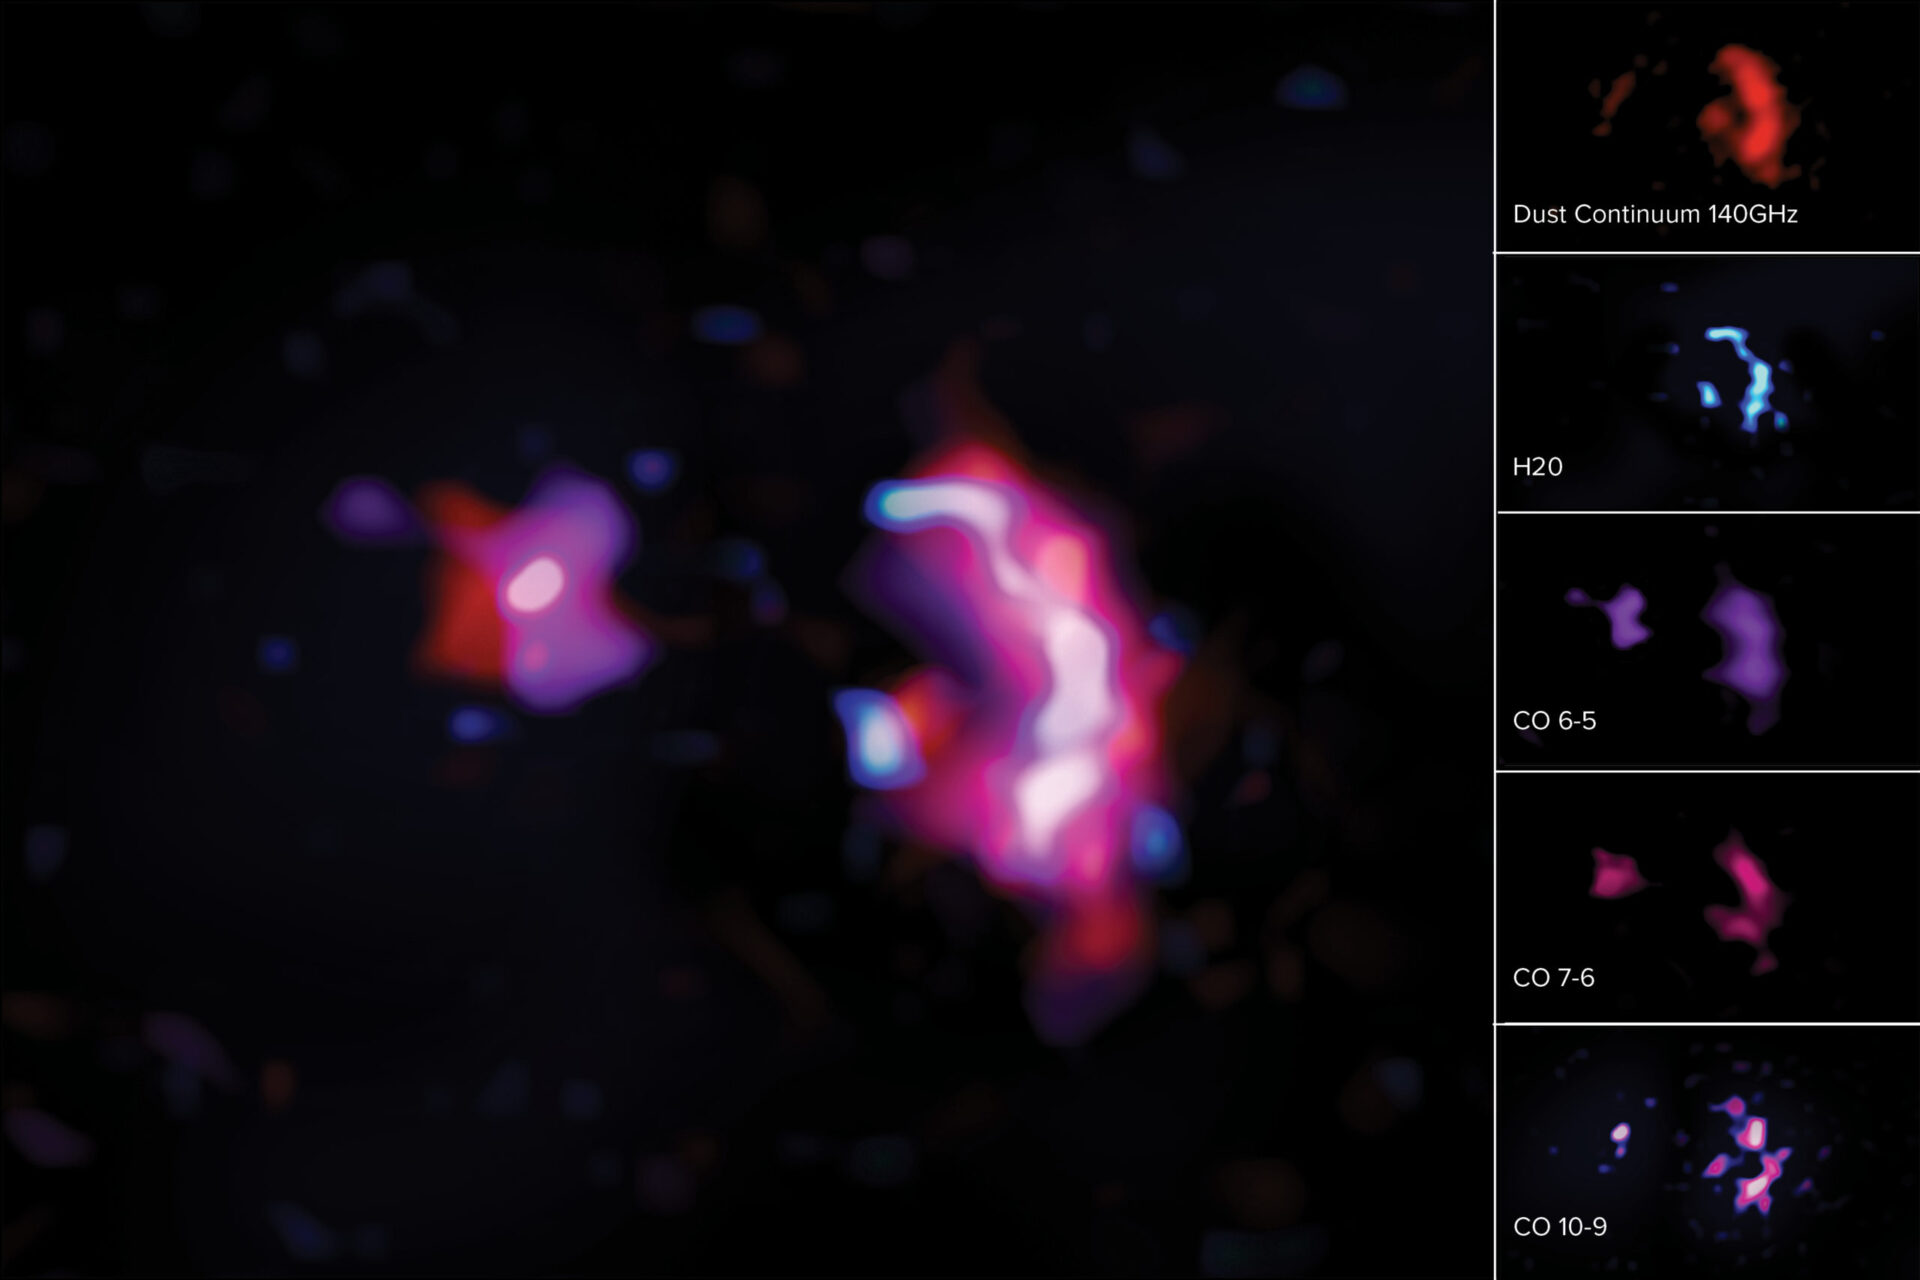 Estas imágenes muestran las líneas moleculares y el continuo de polvo observados por ALMA en la pareja de jóvenes galaxias masivas jóvenes conocida como SPT0311-58. Izquierda: imagen compuesta del continuo de polvo y las líneas moleculares de H2O y CO. Derecha: continuo de polvo representado en rojo (arriba), líneas moleculares de H2O en azul (segunda imagen desde arriba), líneas moleculares de monóxido de carbono (6-5) en morado (centro), líneas moleculares de monóxido de carbono (7-6) en magenta (segunda desde abajo) y líneas moleculares de monóxido de carbono (10-9) en rosado y azul oscuro (abajo). Créditos: ALMA (ESO/NAOJ/NRAO) /S. Dagnello (NRAO)